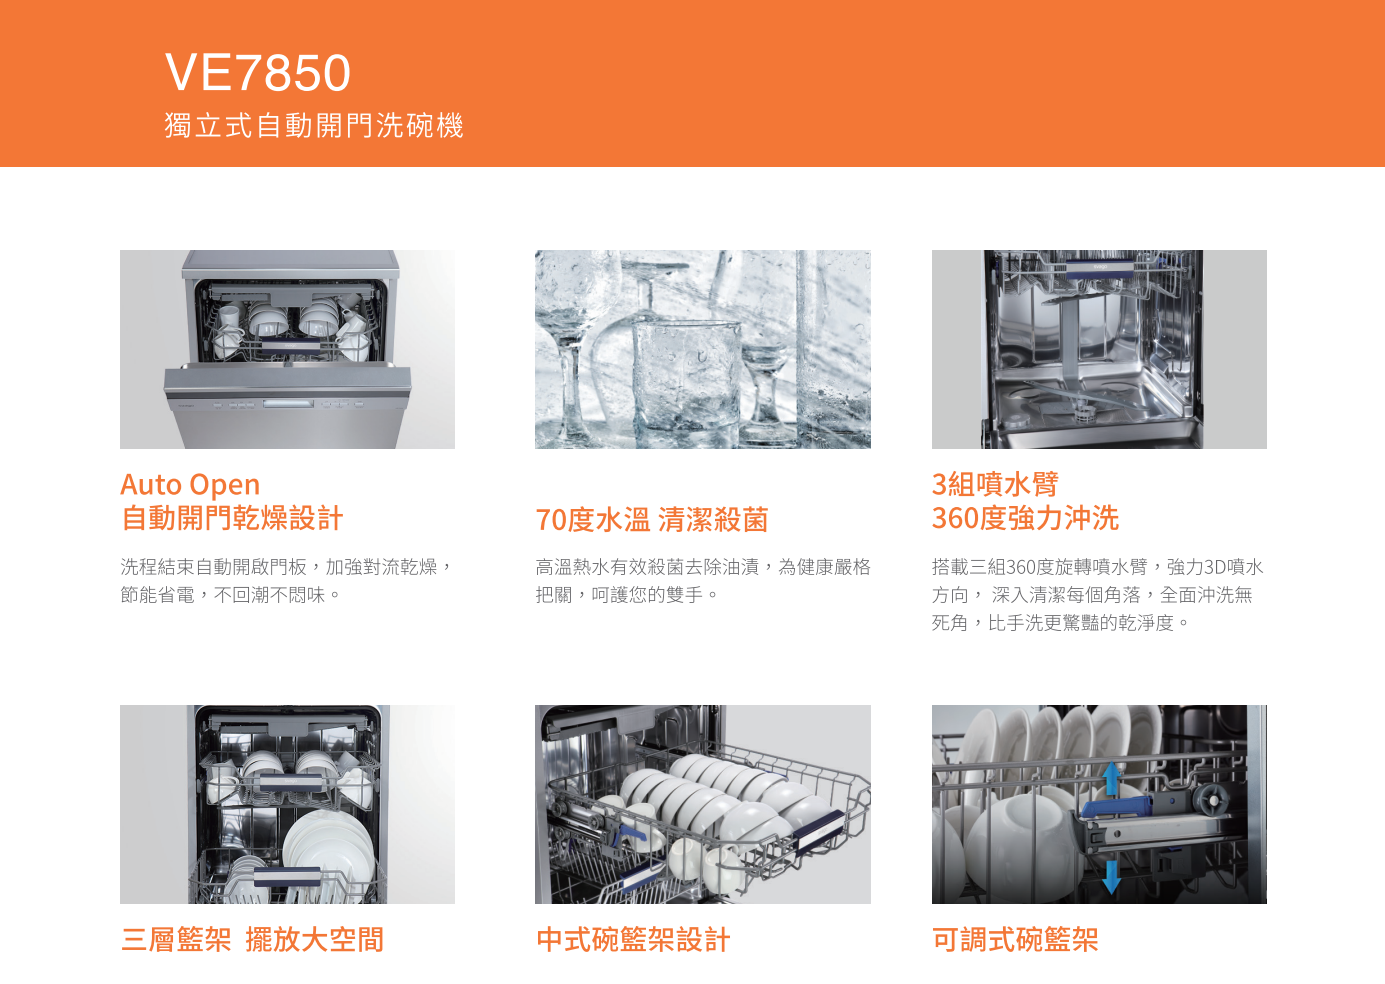 【樂昂客】可議價 含基本安裝 SVAGO VE7850 獨立式洗碗機 14人份 110V 自動開門 中式碗籃